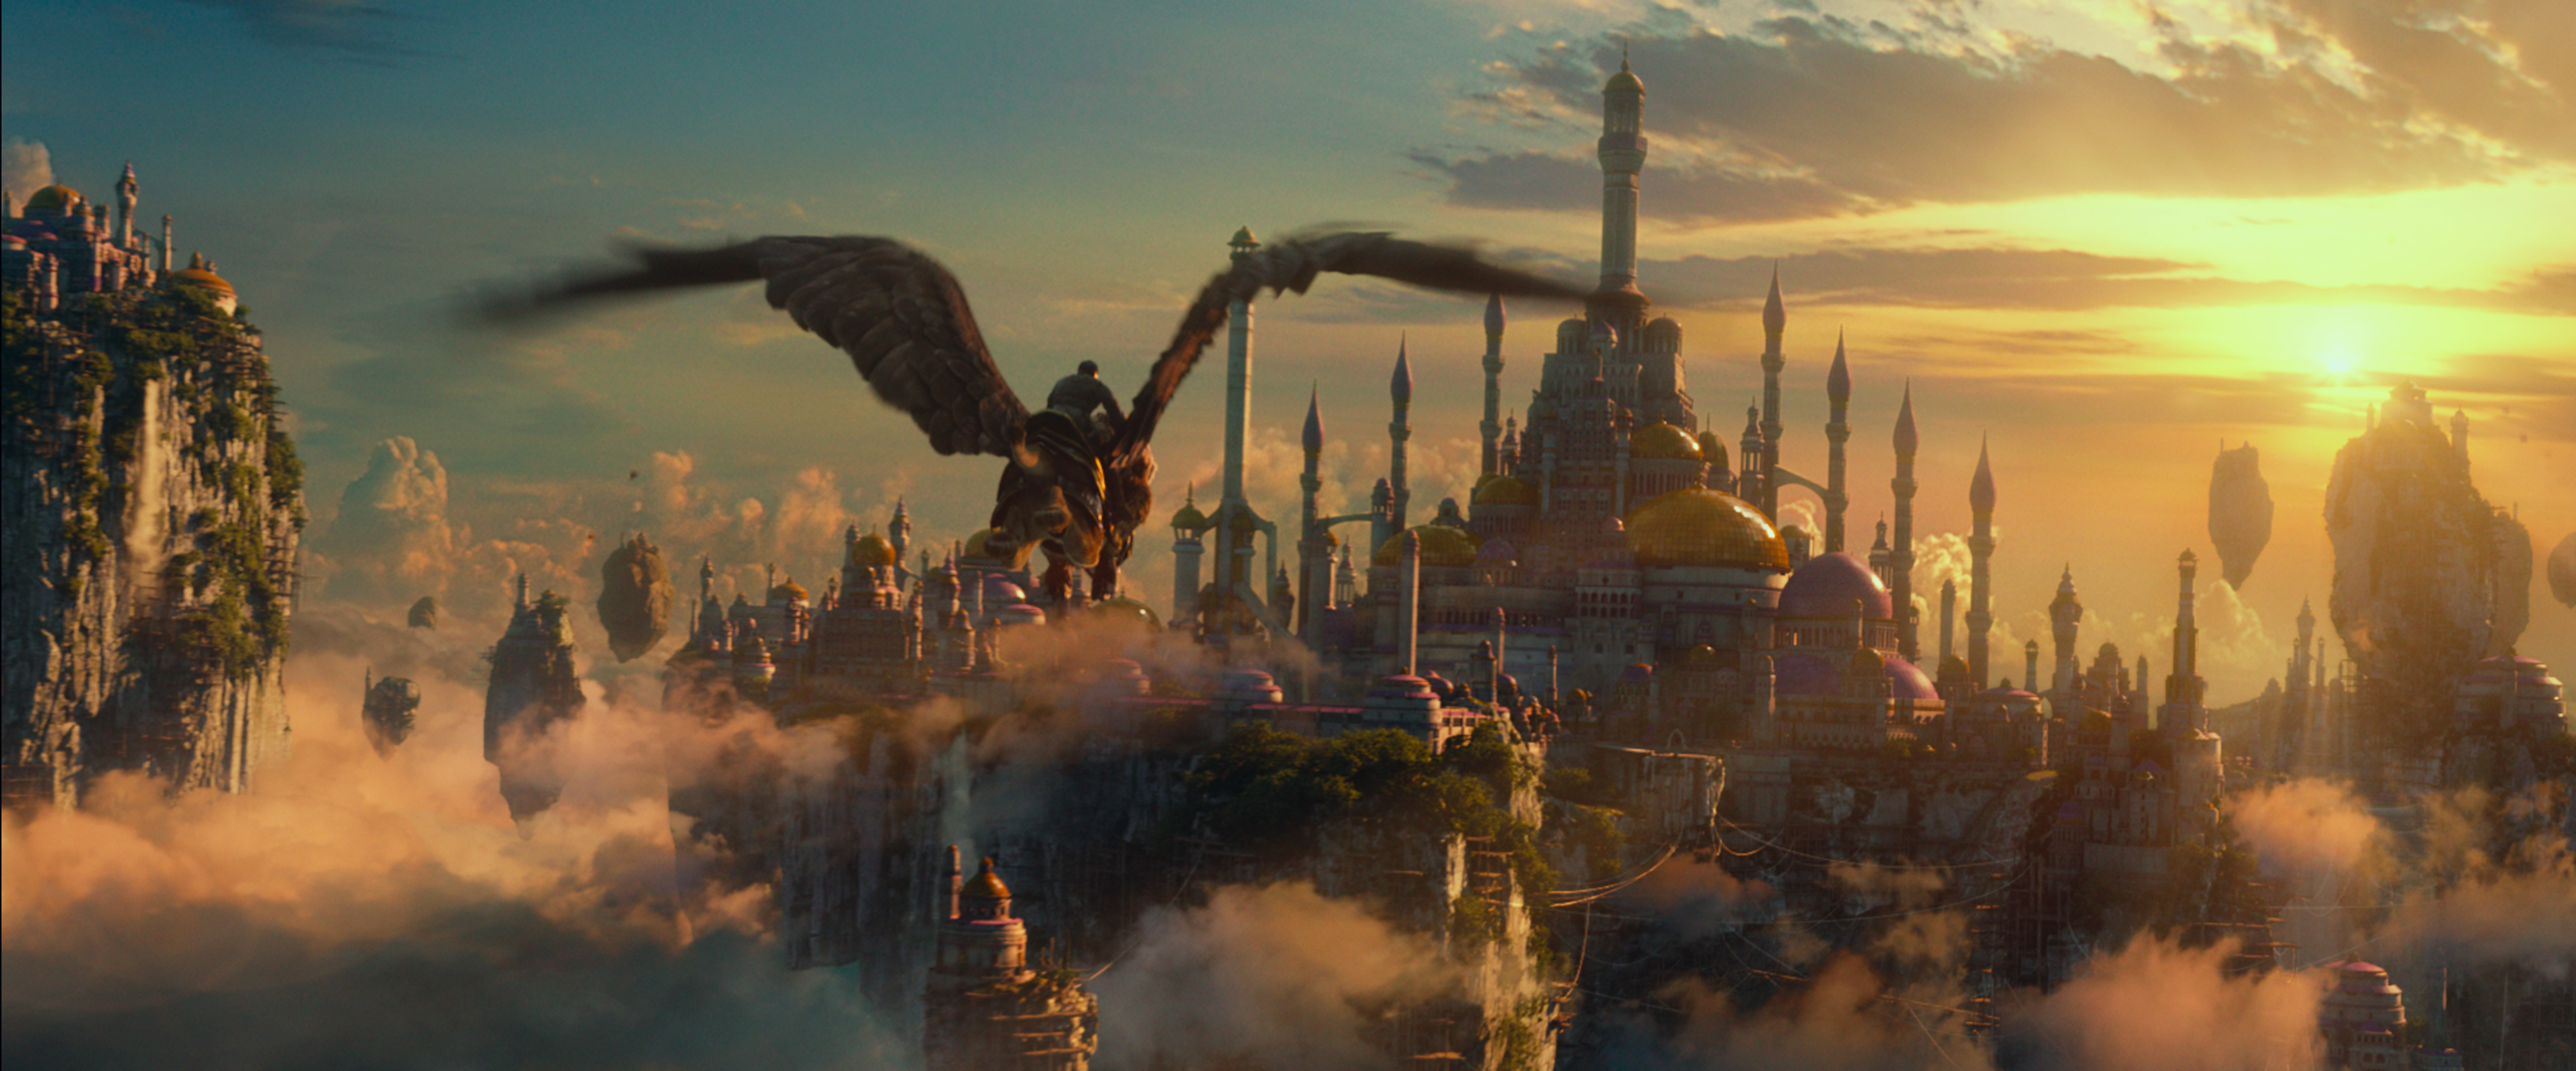 Warcraft Movie, Warcraft, Wow Movie, Movie, Griffin, Alliance, Fly Wallpaper